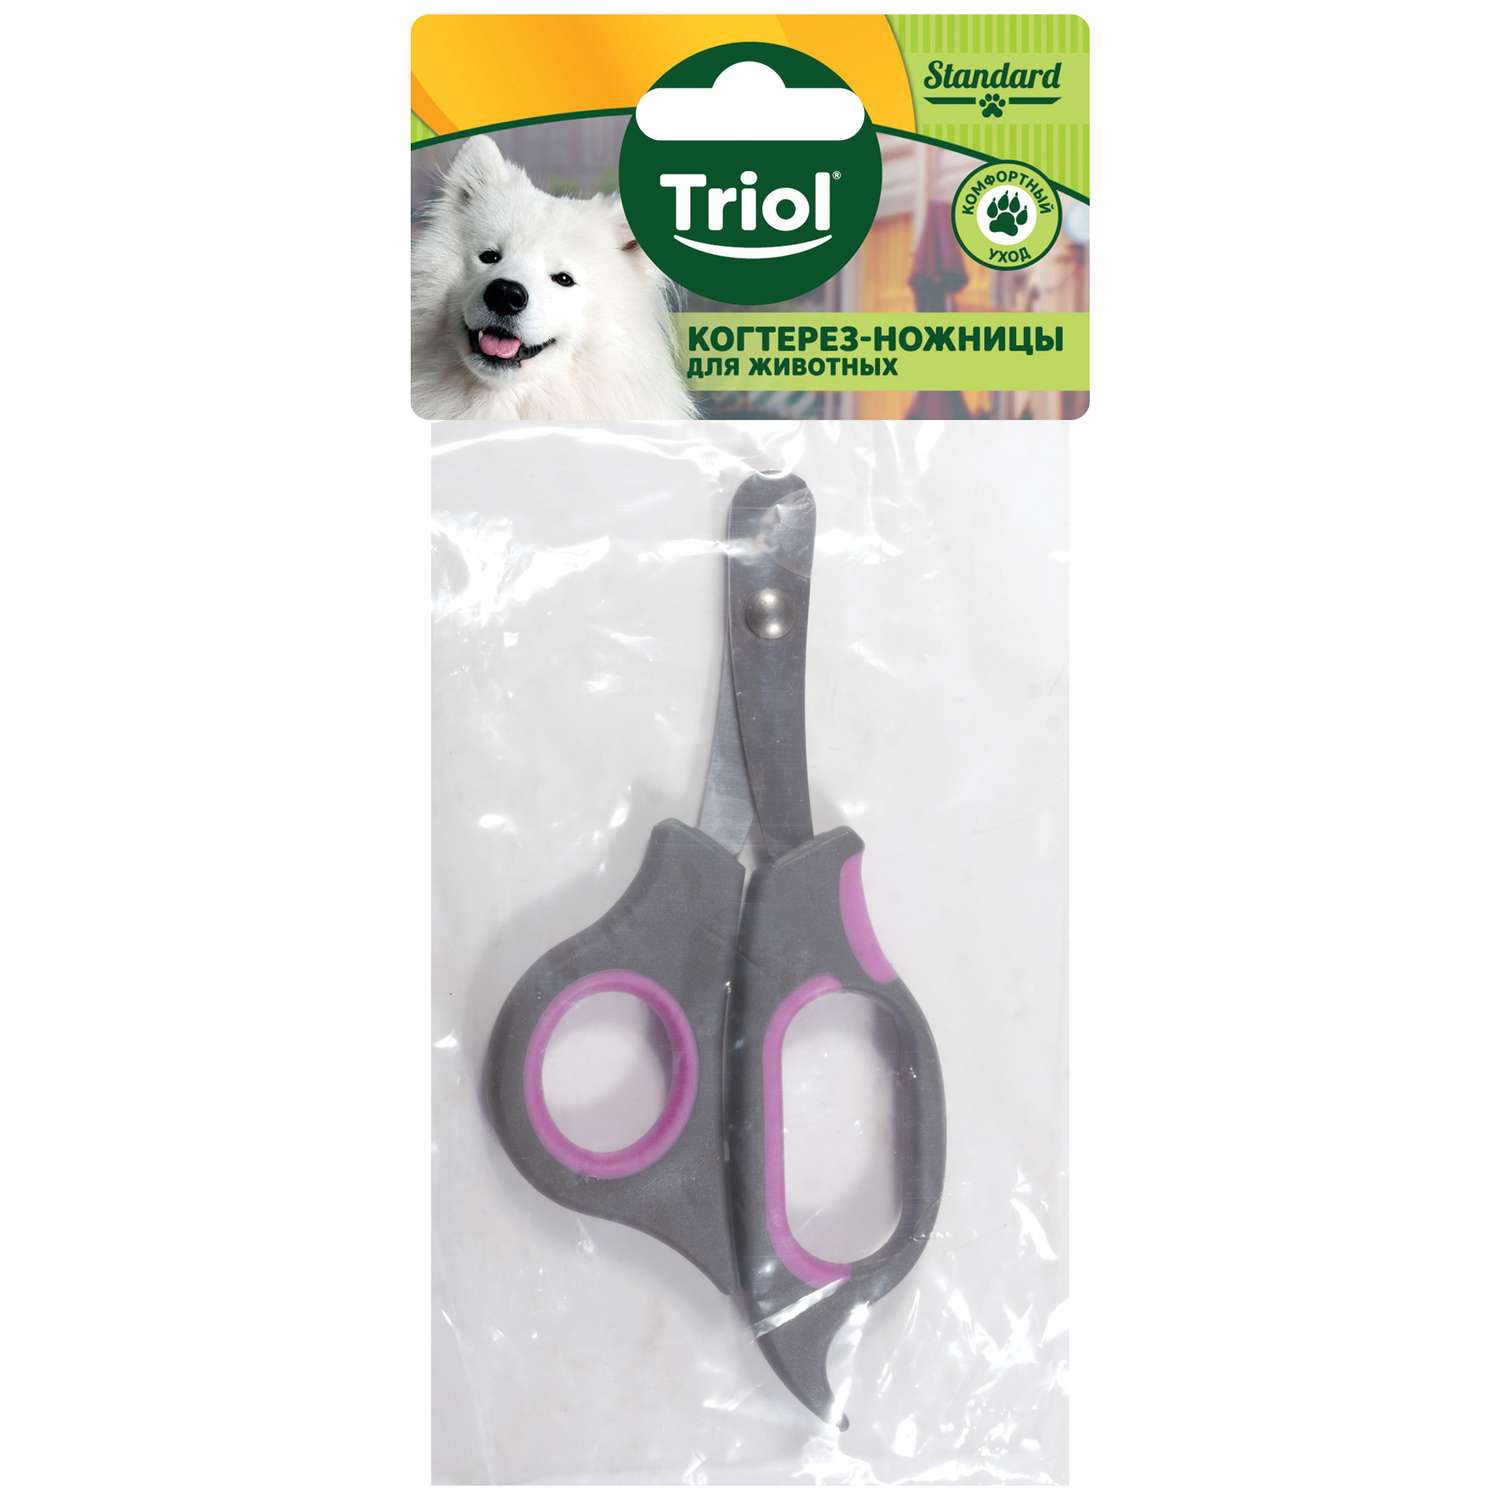 Когтерез-ножницы для животных Triol Стандарт 31701018 - фото 3